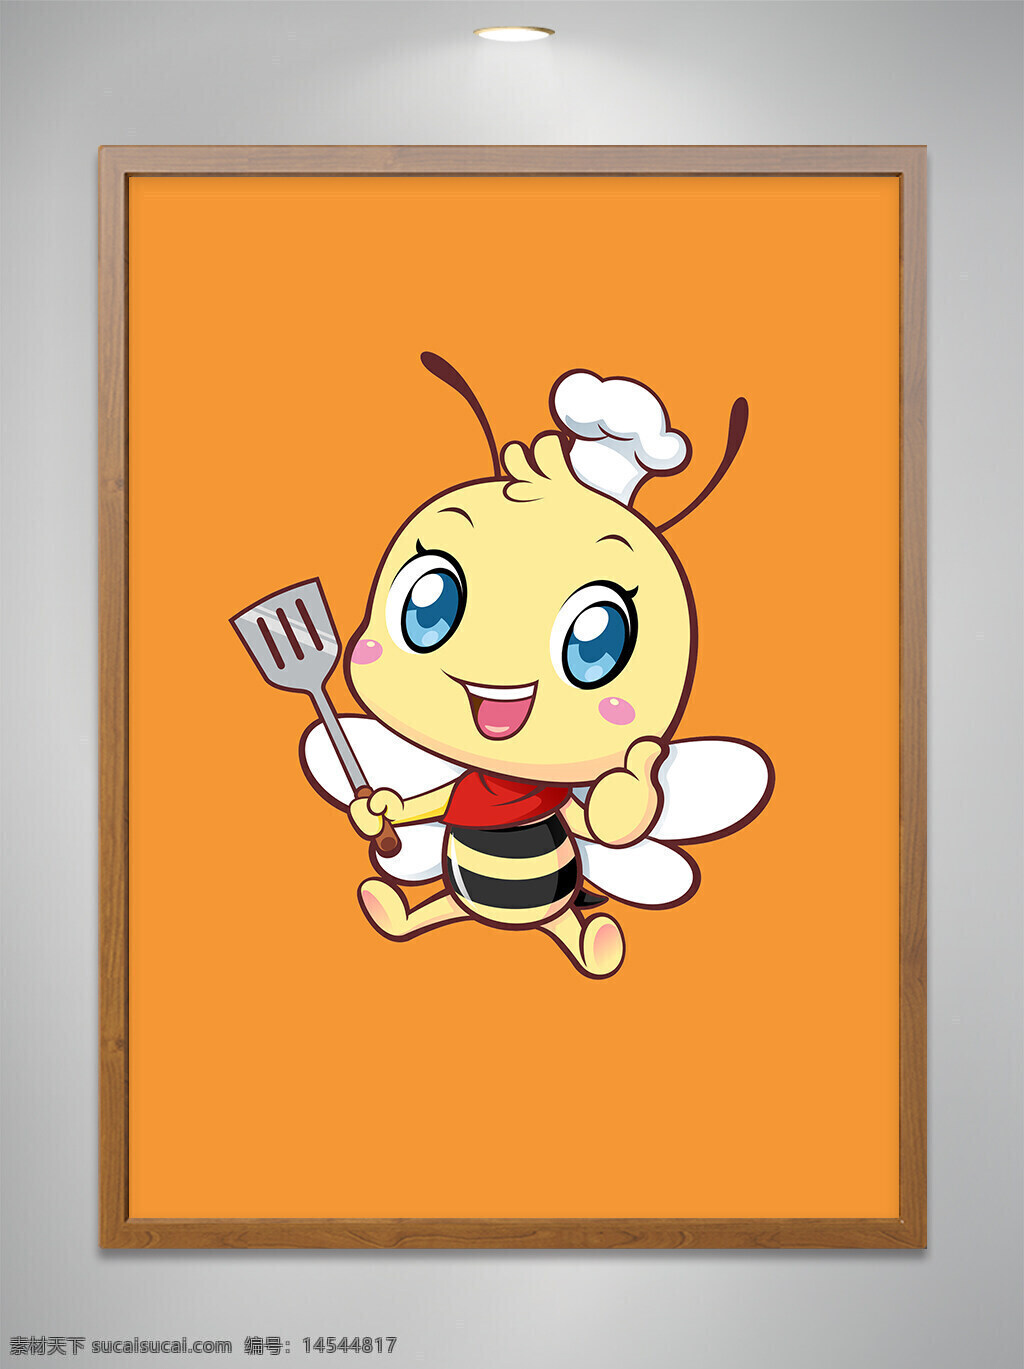 卡通原创 卡通吉祥物 卡通动物 卡通可爱小蜜蜂 卡通可爱小蜜蜂厨师 卡通可爱小蜜蜂厨师竖大拇指 餐饮 cdr矢量图